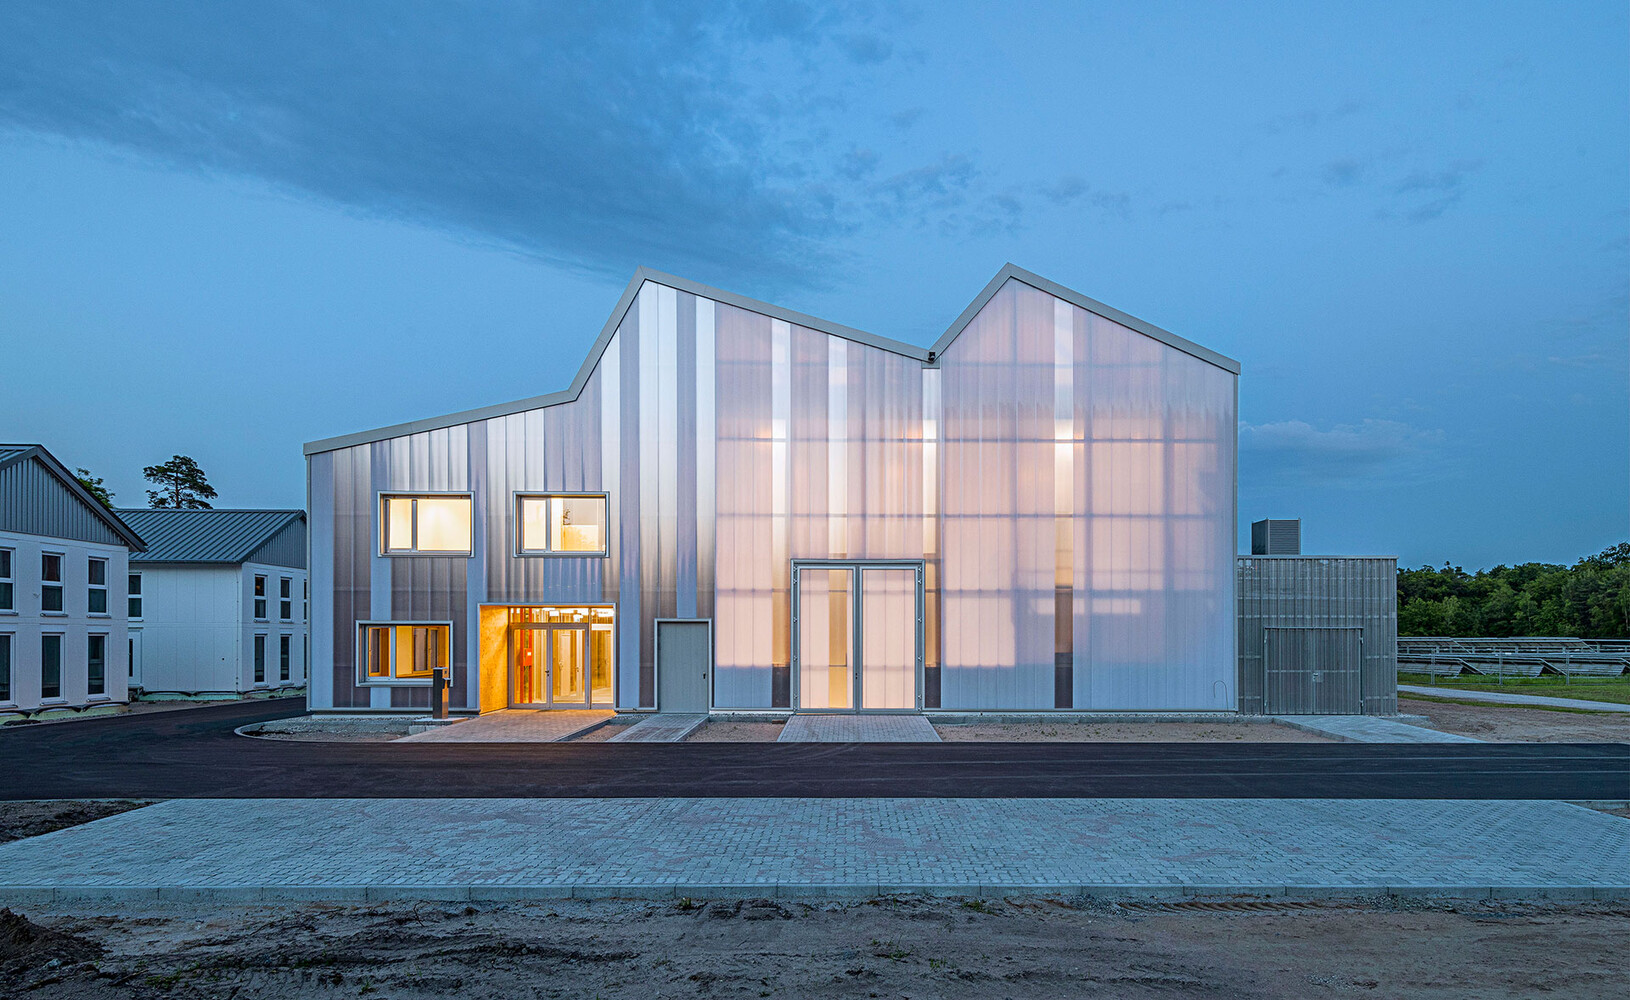 The Behnisch Architekten-designed, gabled energy lab